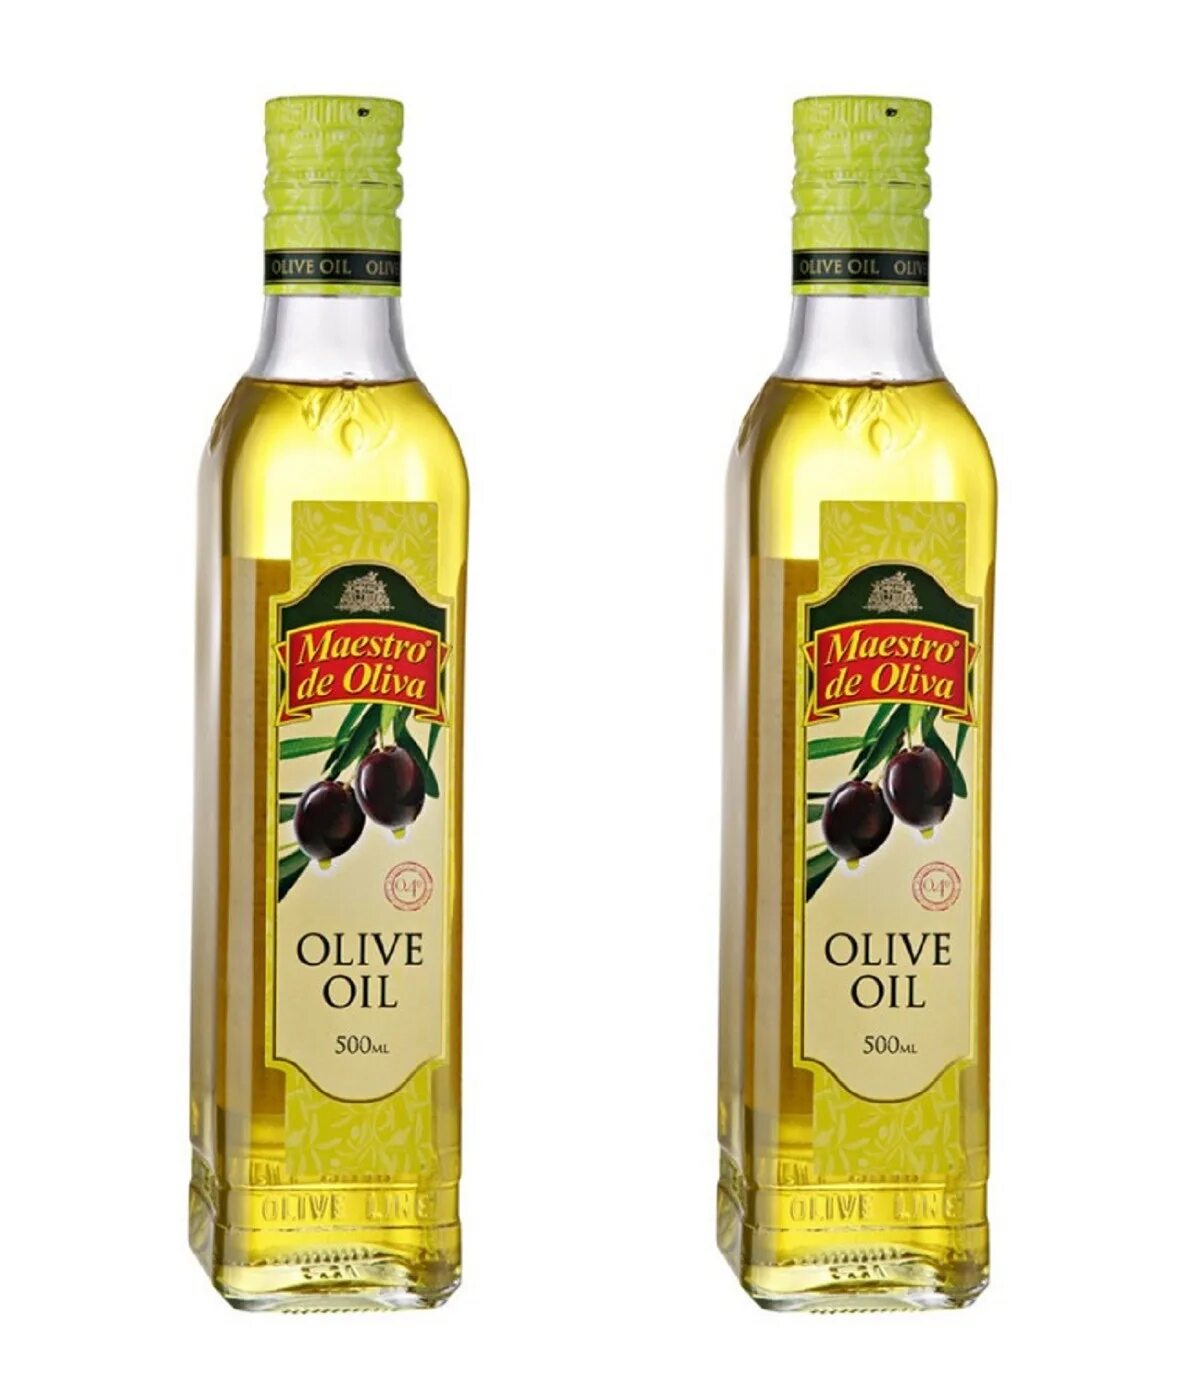 Масло оливковое Maestro de Oliva Extra Virgin нерафинированное, 1 л. Olive Oil нерафинированное масло оливковое. Olive Oil масло оливковое рафинированное и нерафинированное.